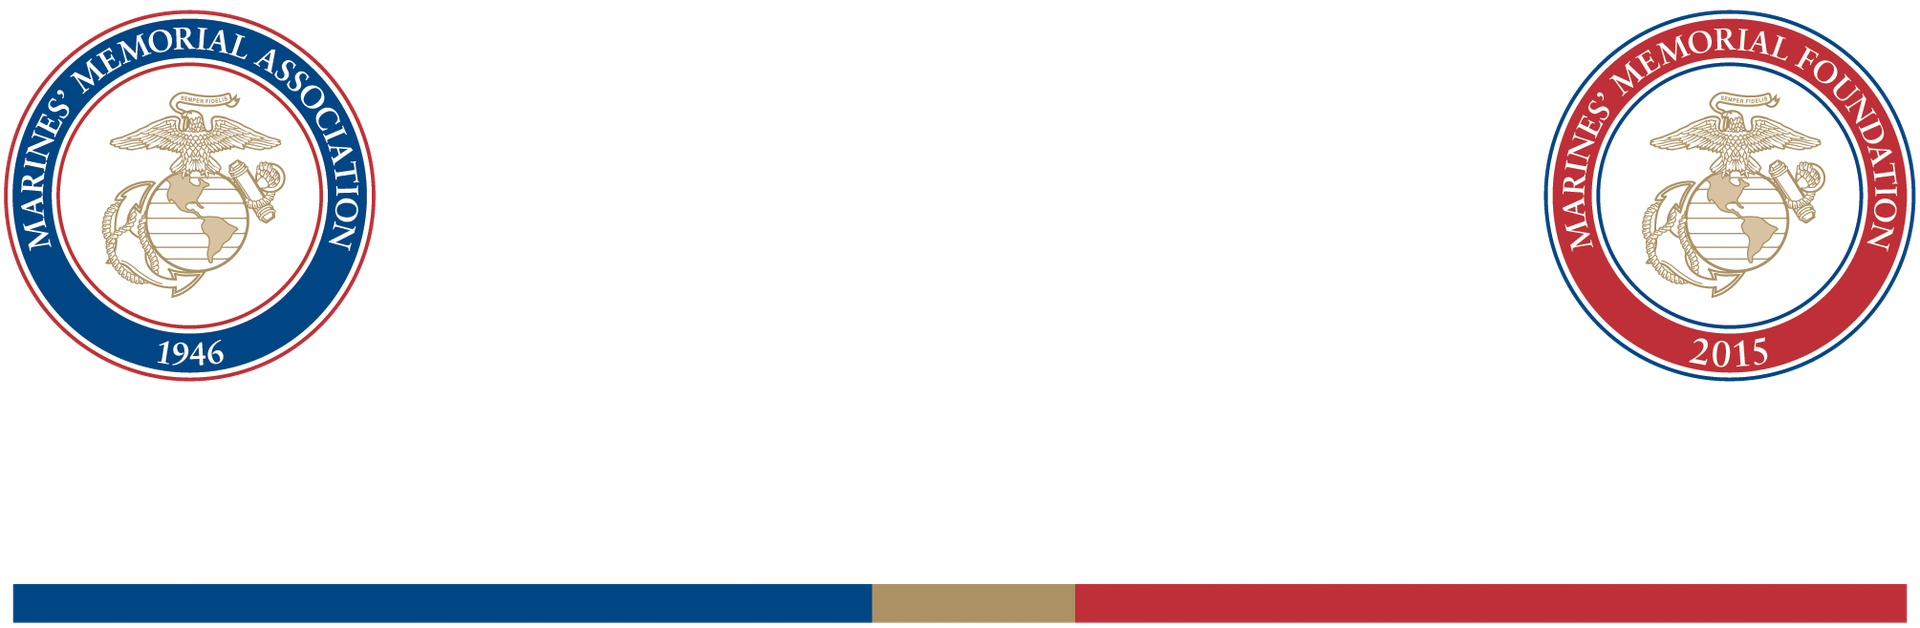 Marines' Memorial